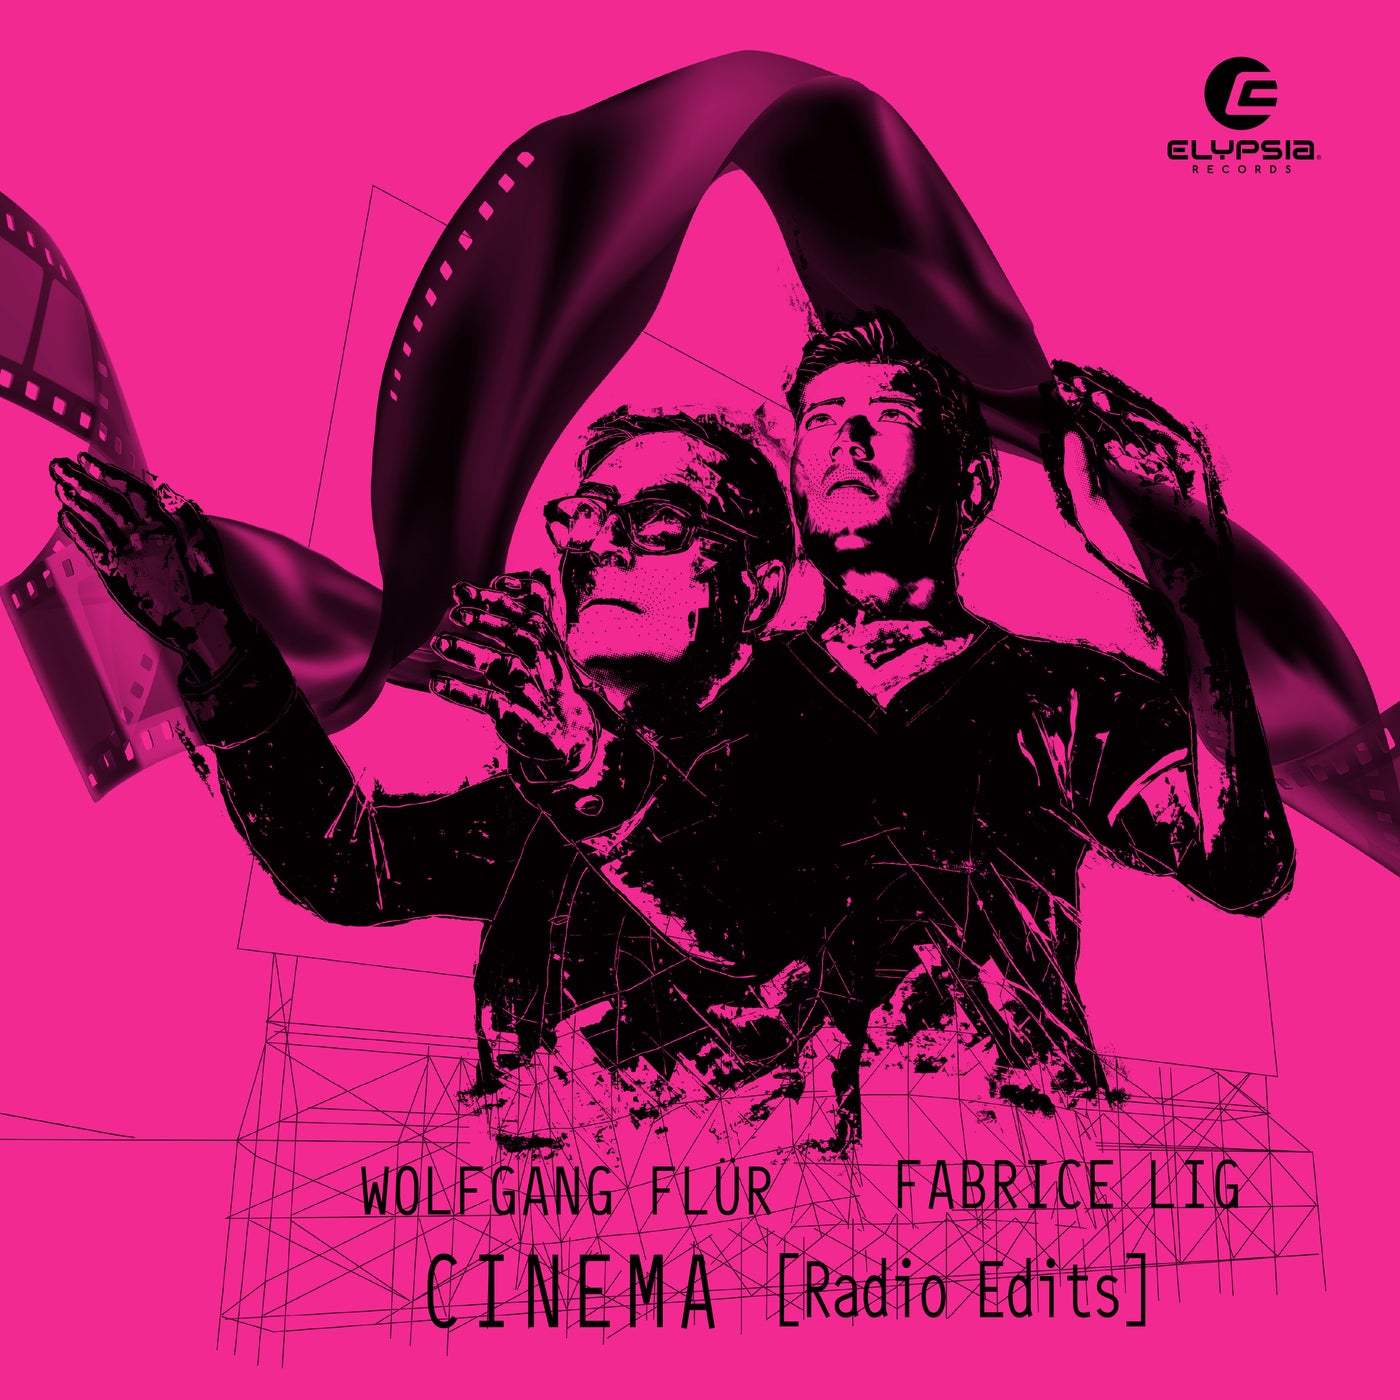 Cinema (Radio Edits)